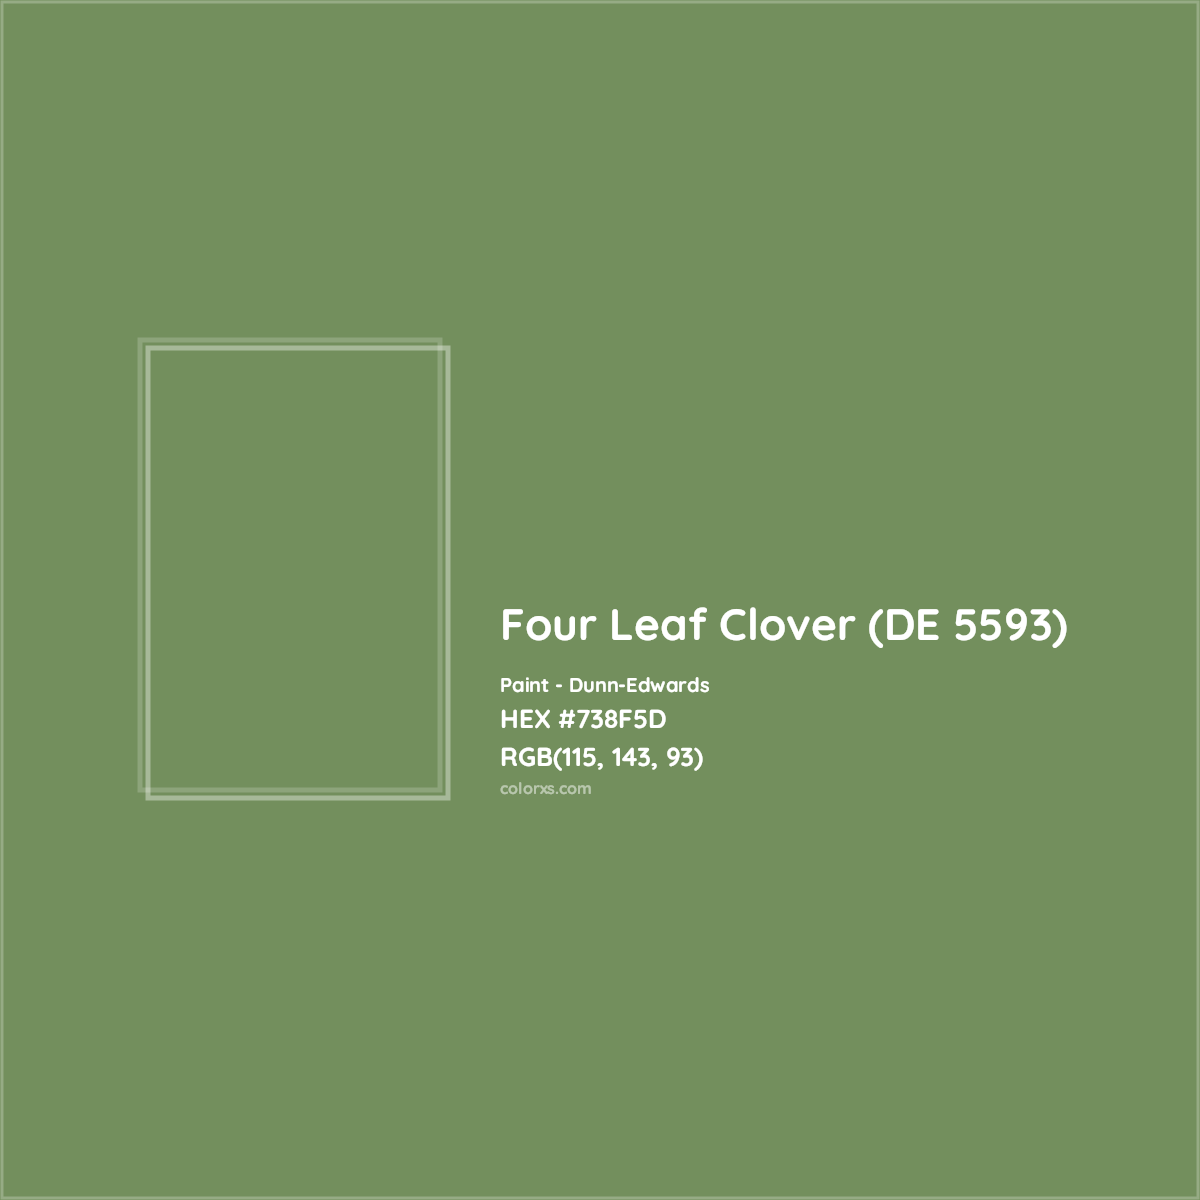 HEX #738F5D Four Leaf Clover (DE 5593) Paint Dunn-Edwards - Color Code